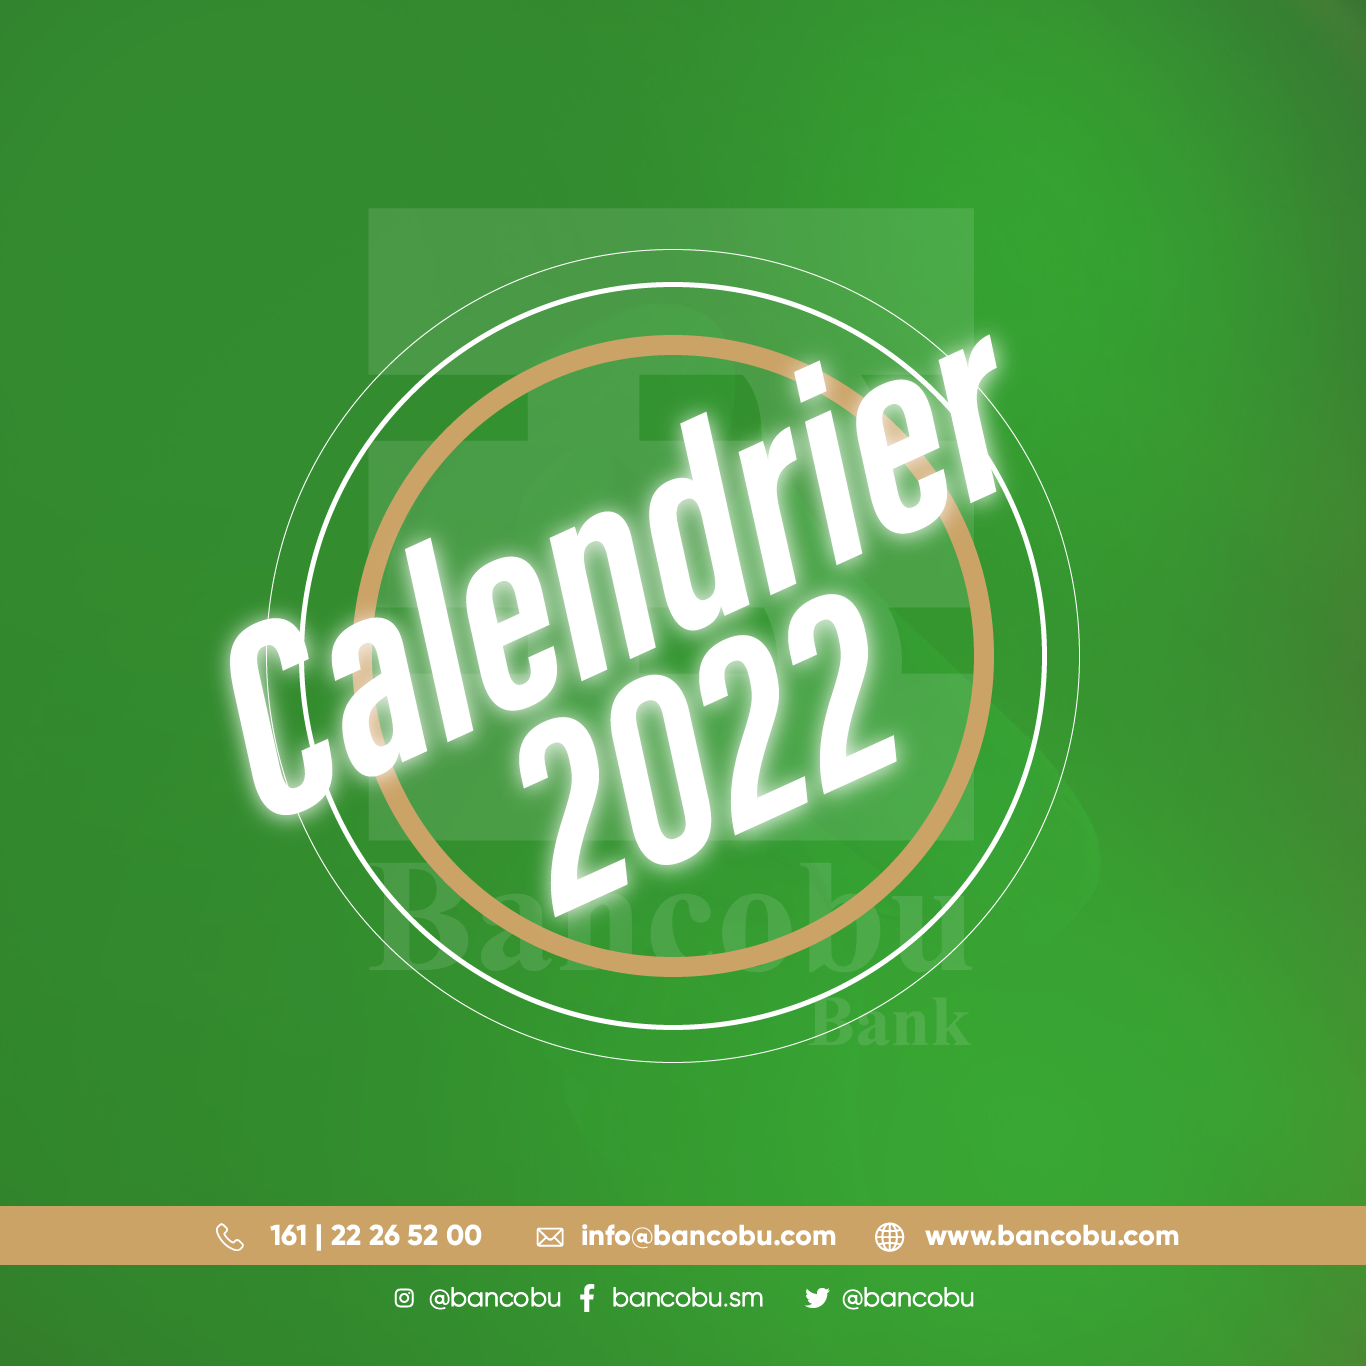 Calendrier de la BANCOBU 2022